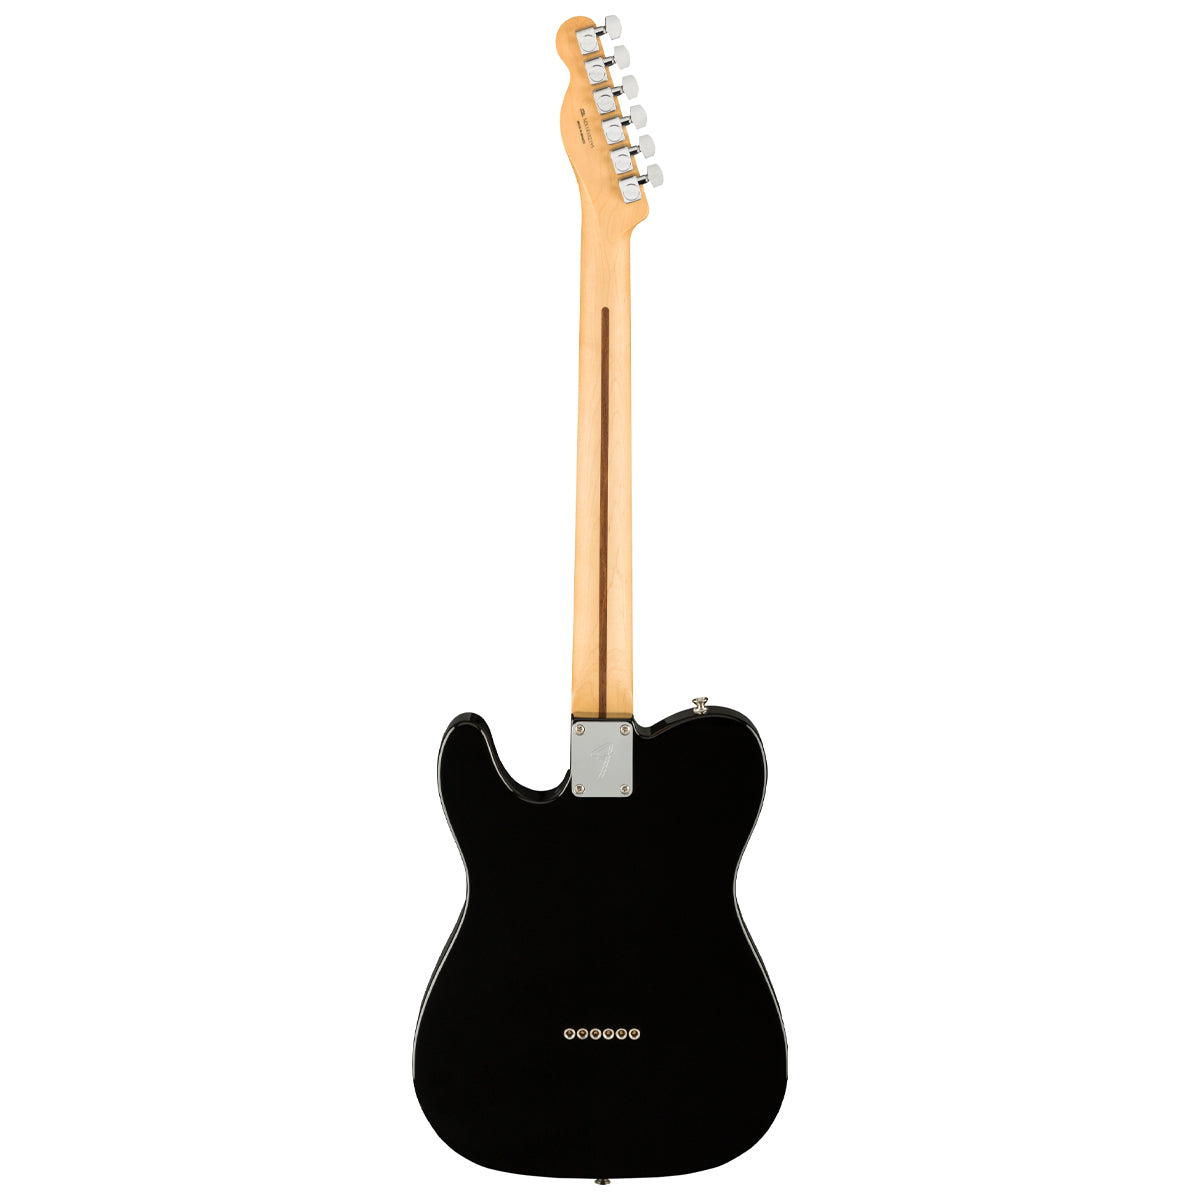 Đàn Guitar Điện Fender Player Telecaster